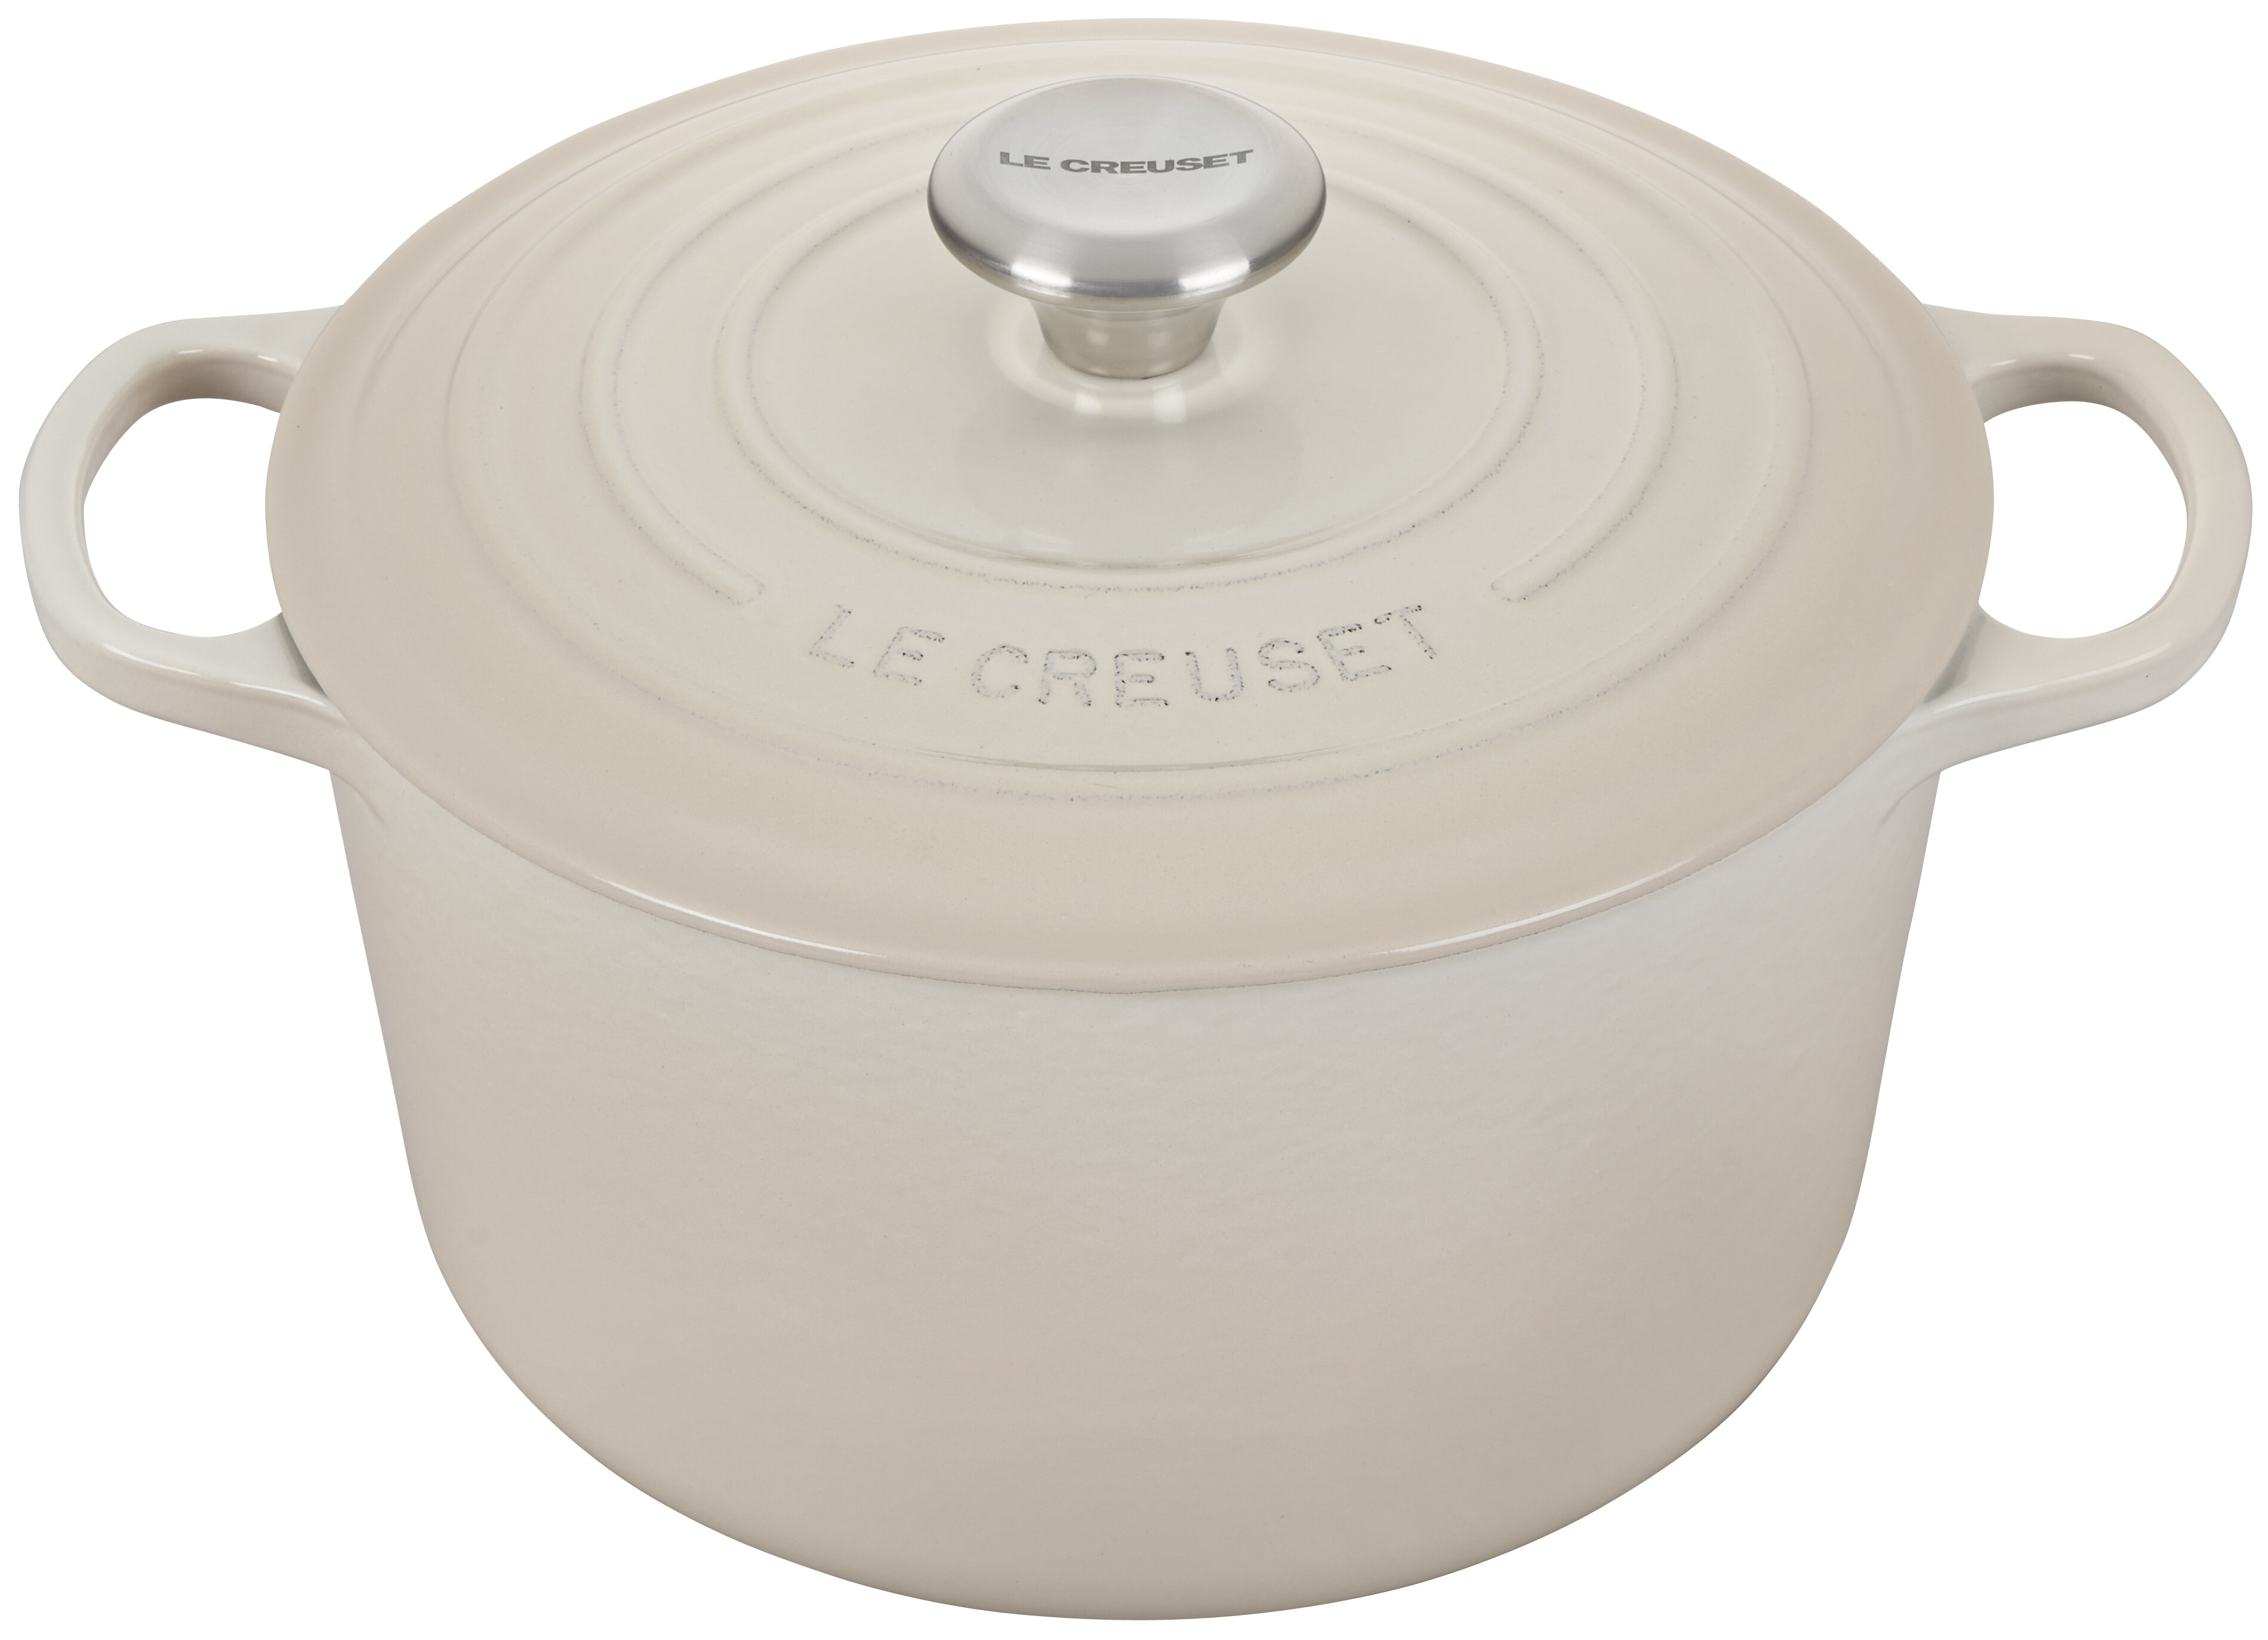 Le Creuset Signature Round Dutch Oven - 7 1/4 qt. – Pryde's